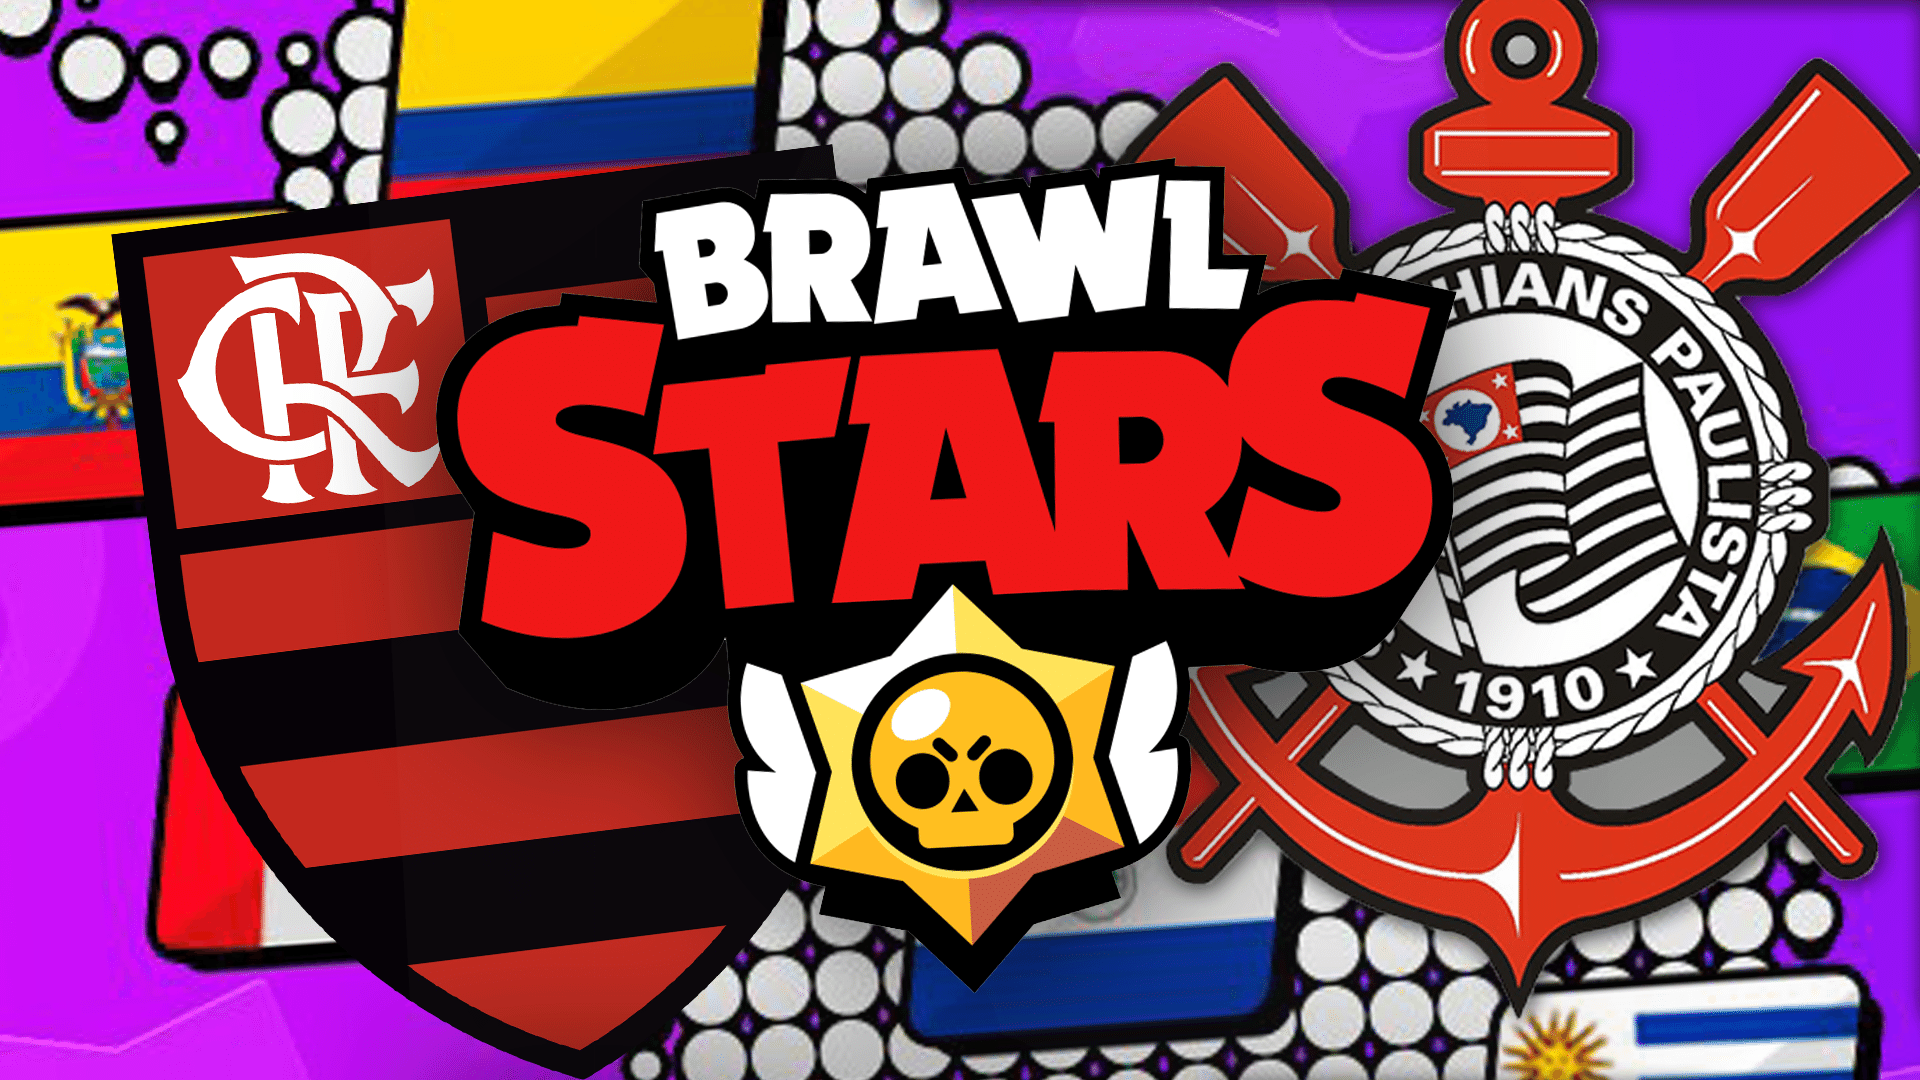 Corinthians E Flamengo Disputam Brawl Stars Master League Veja Times - brawl stars como entrar no campeonato do brawl stars vinho